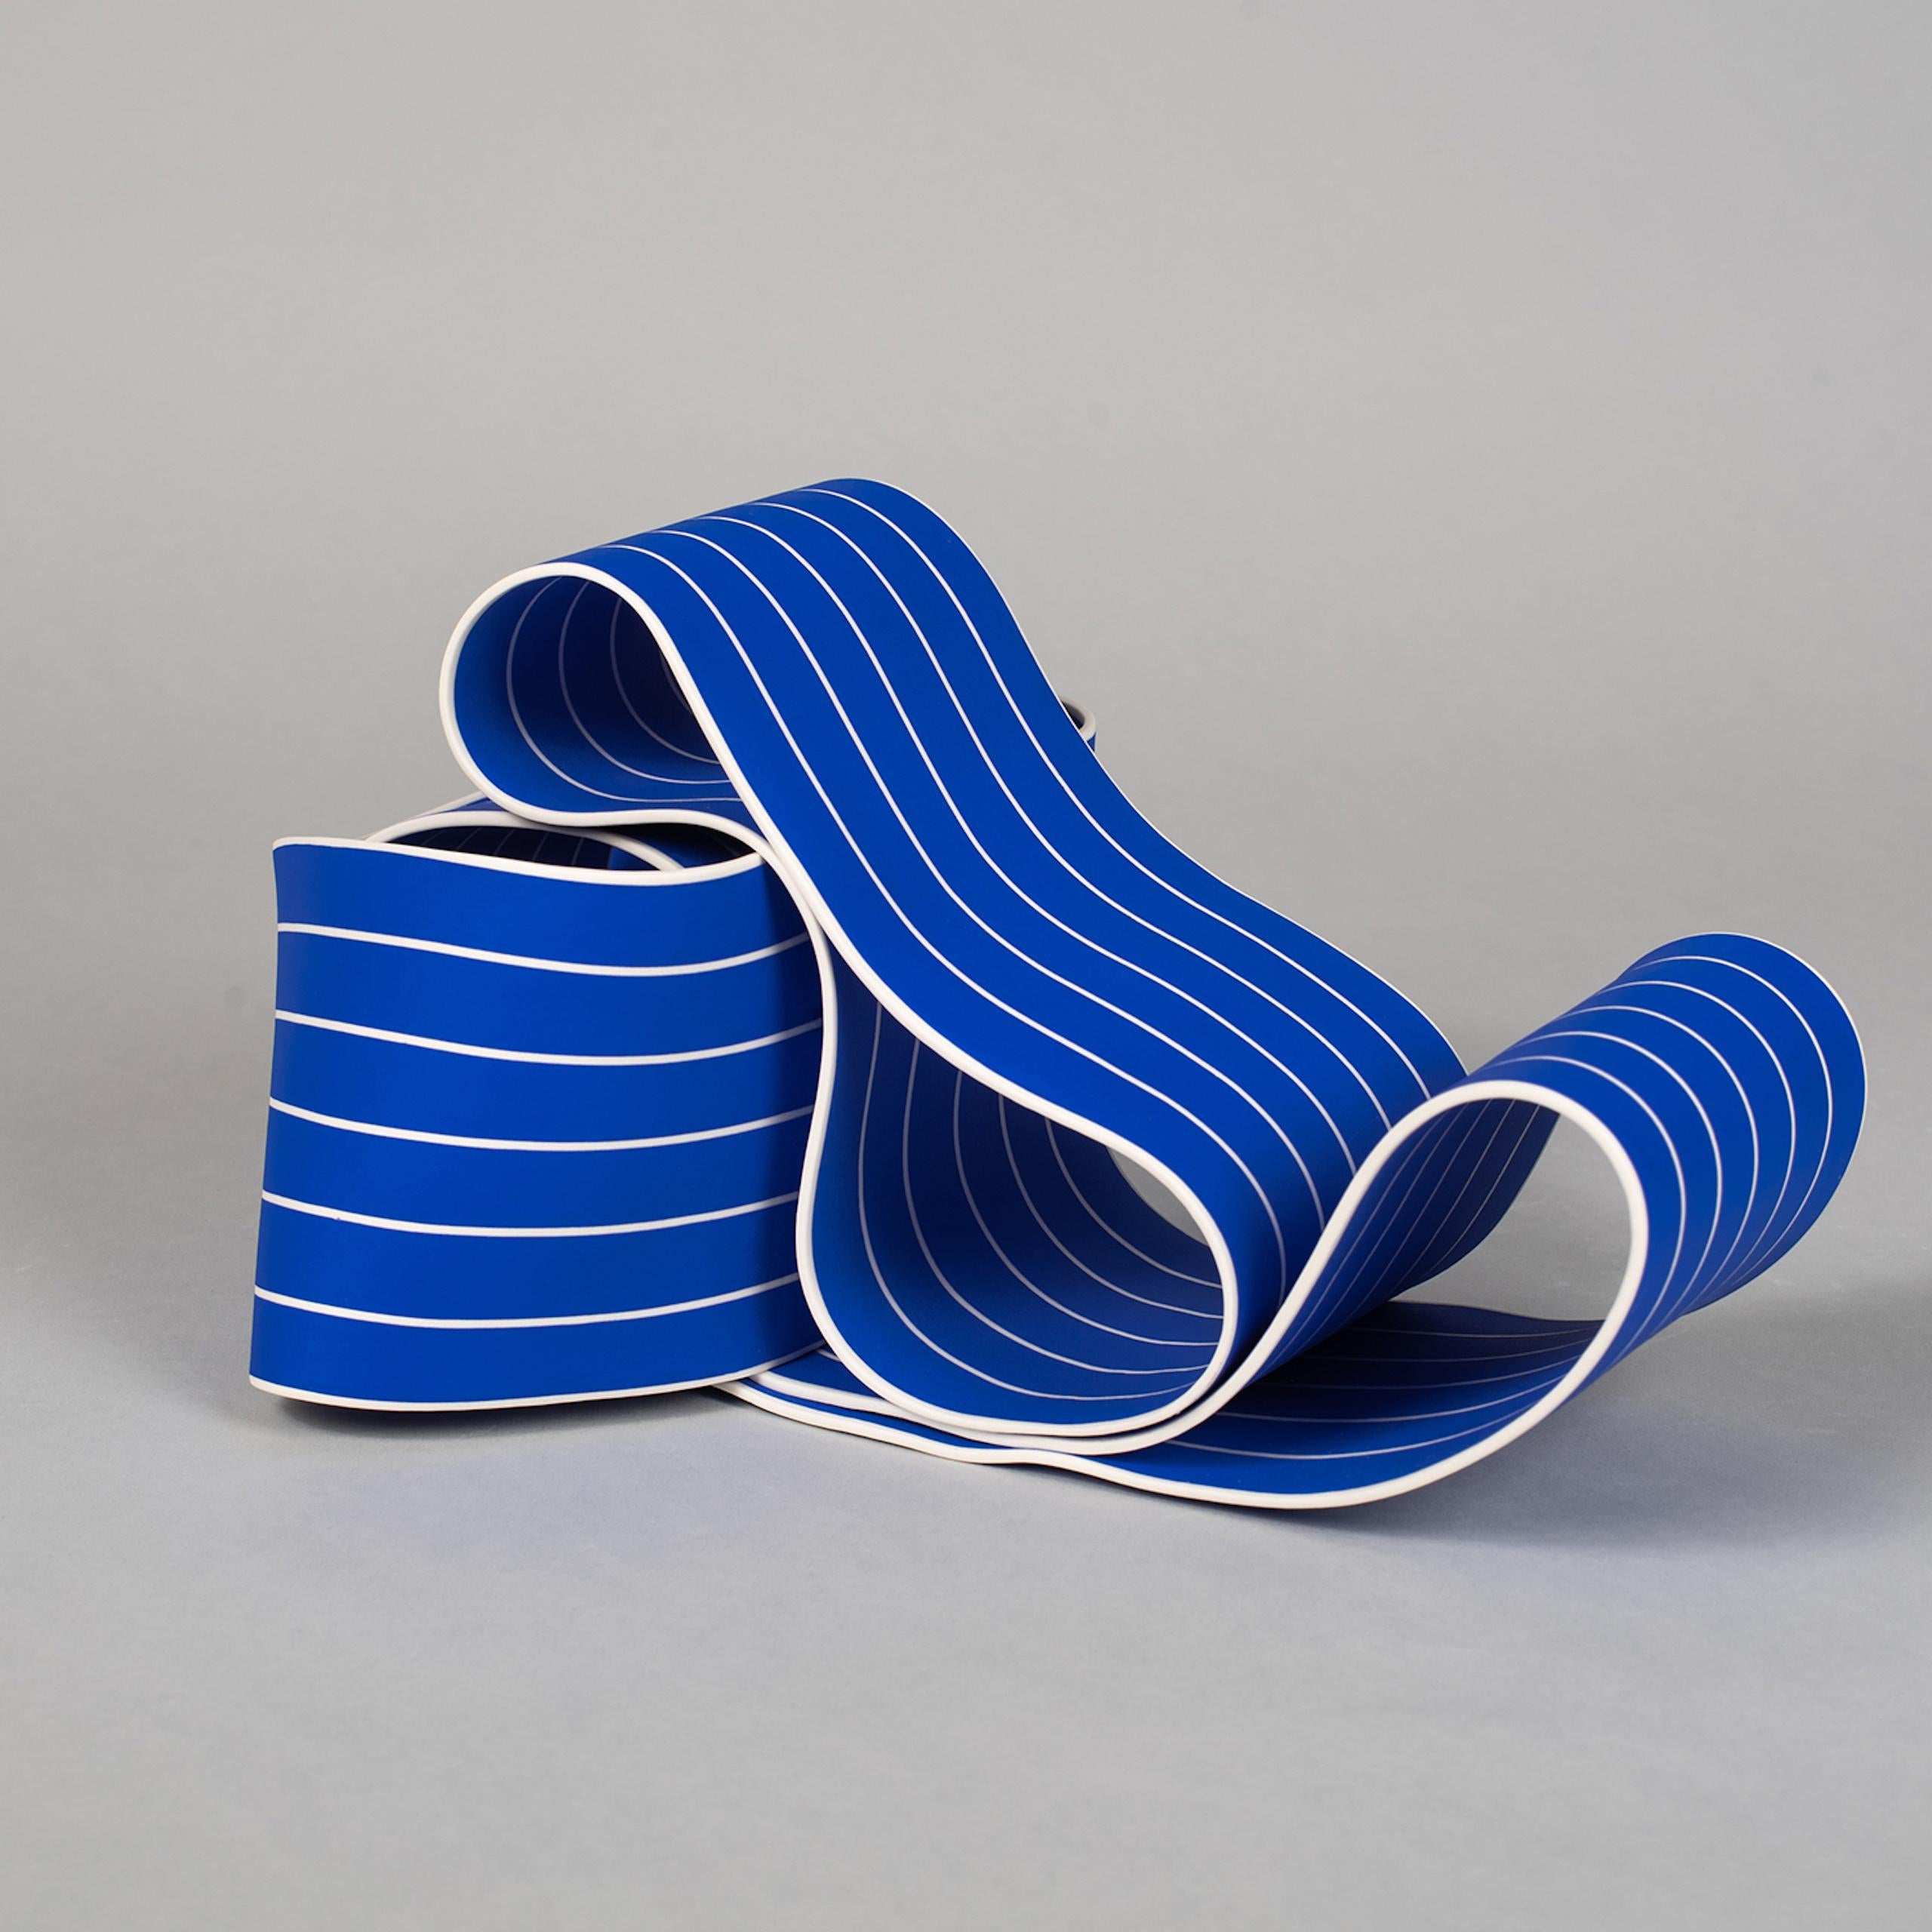 Entrapped 1 by Simcha Even-Chen - Porcelain sculpture, blue lines, movement For Sale 2